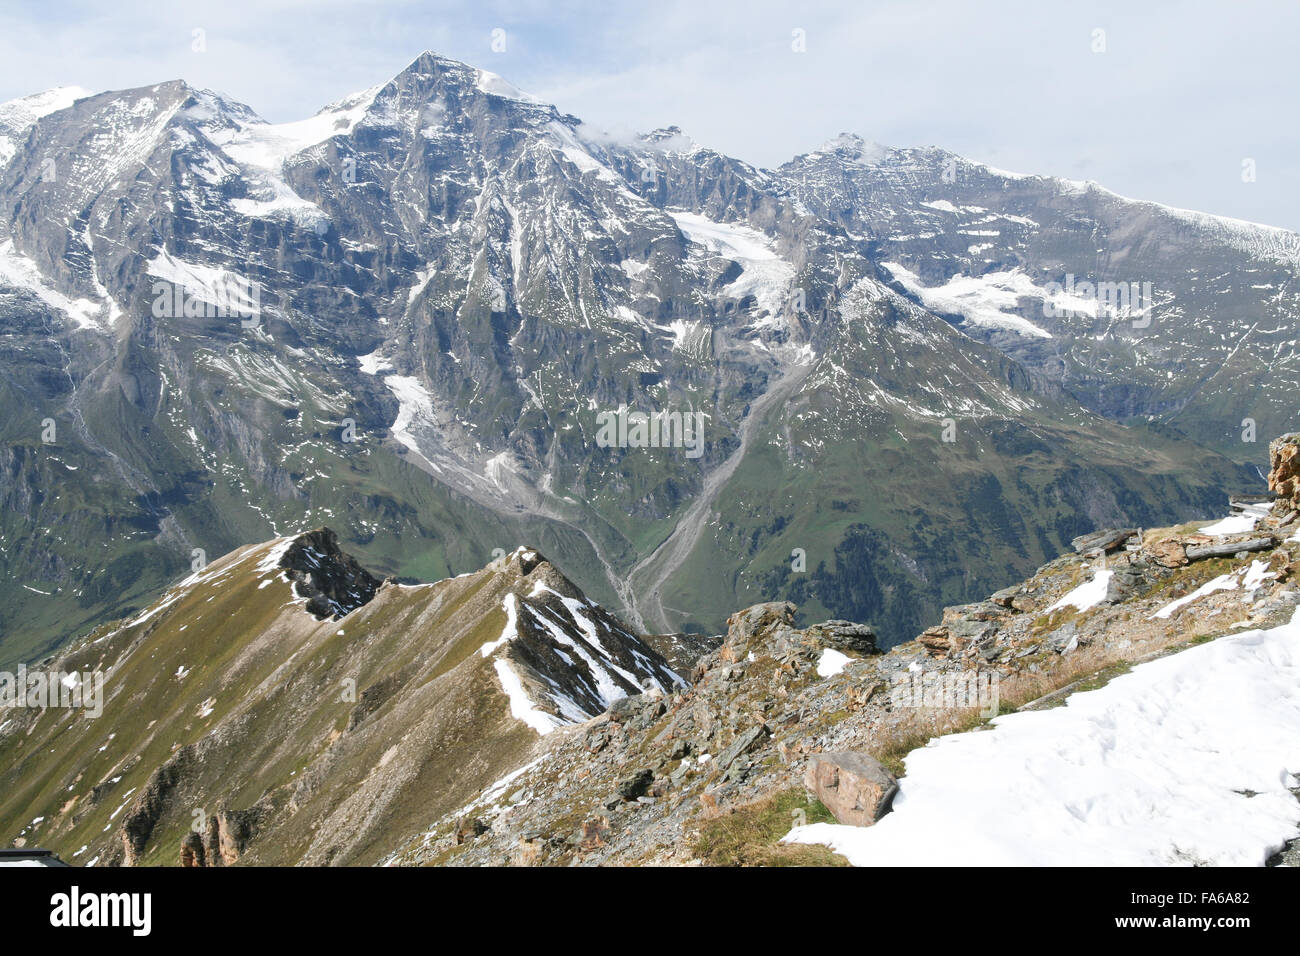 Snowcapped mountains, Alps, Austria Stock Photo